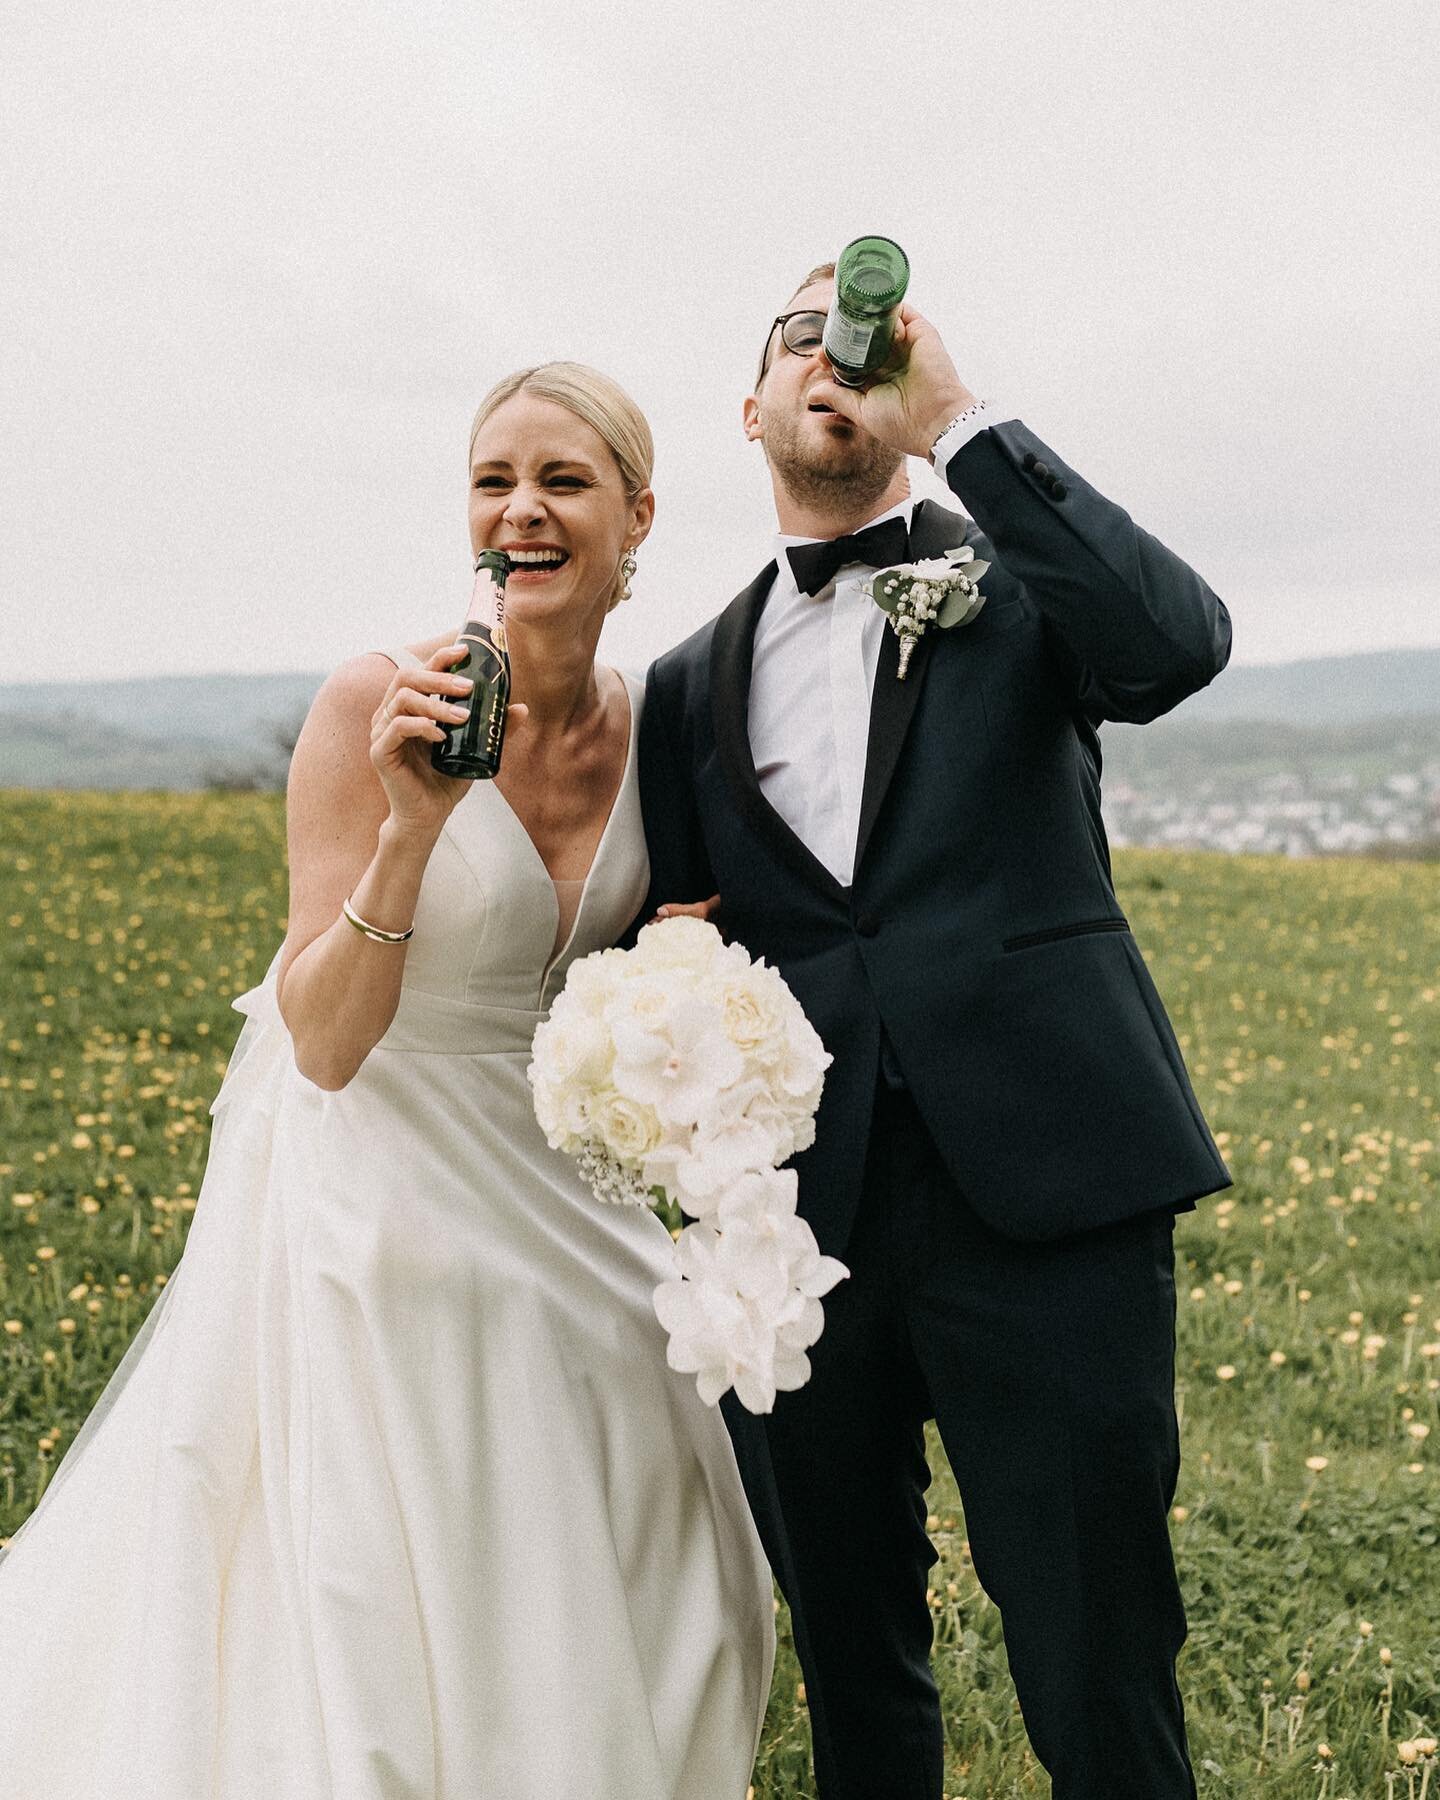 Cheers! 🥂

#weddinginspiration #hochzeitsfotografie #familie #aufuns